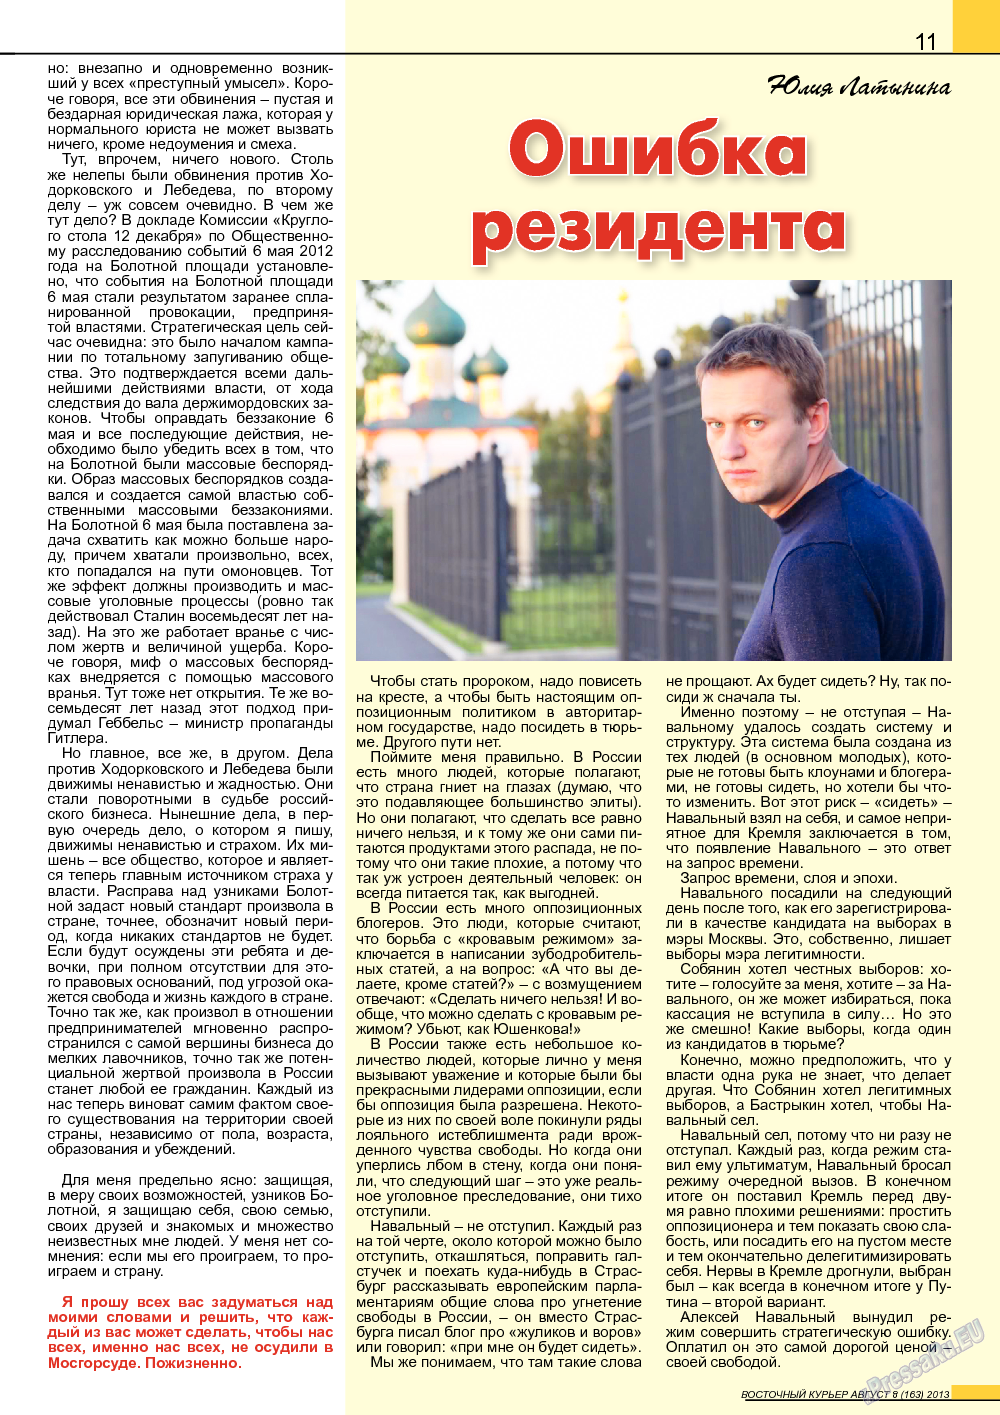 Восточный курьер, журнал. 2013 №8 стр.11